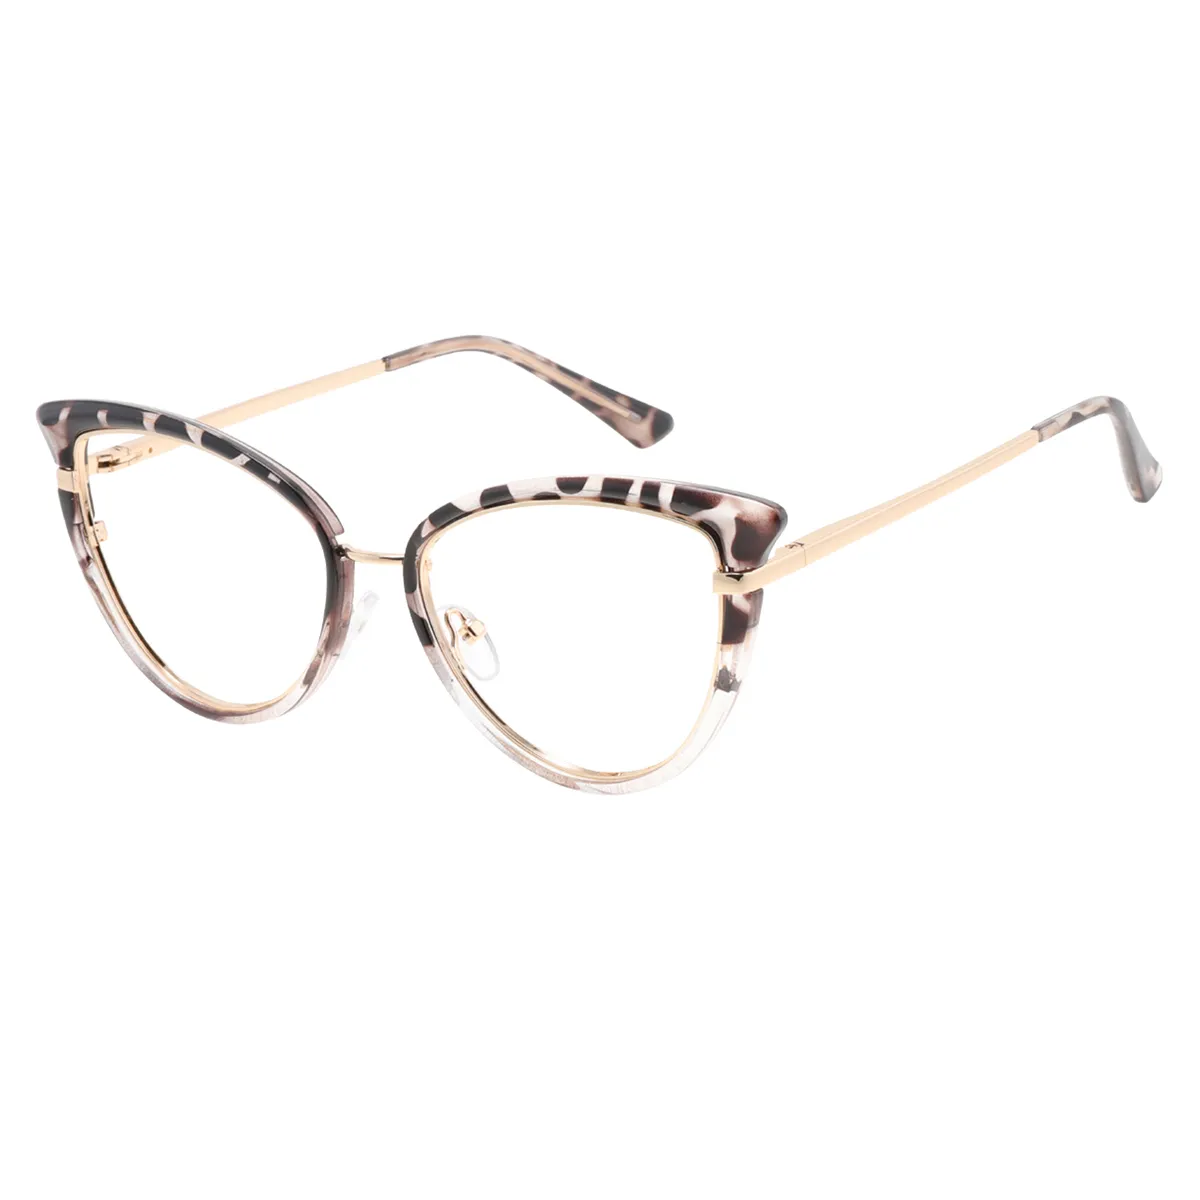 Griffin - Cat-eye  Glasses for Women